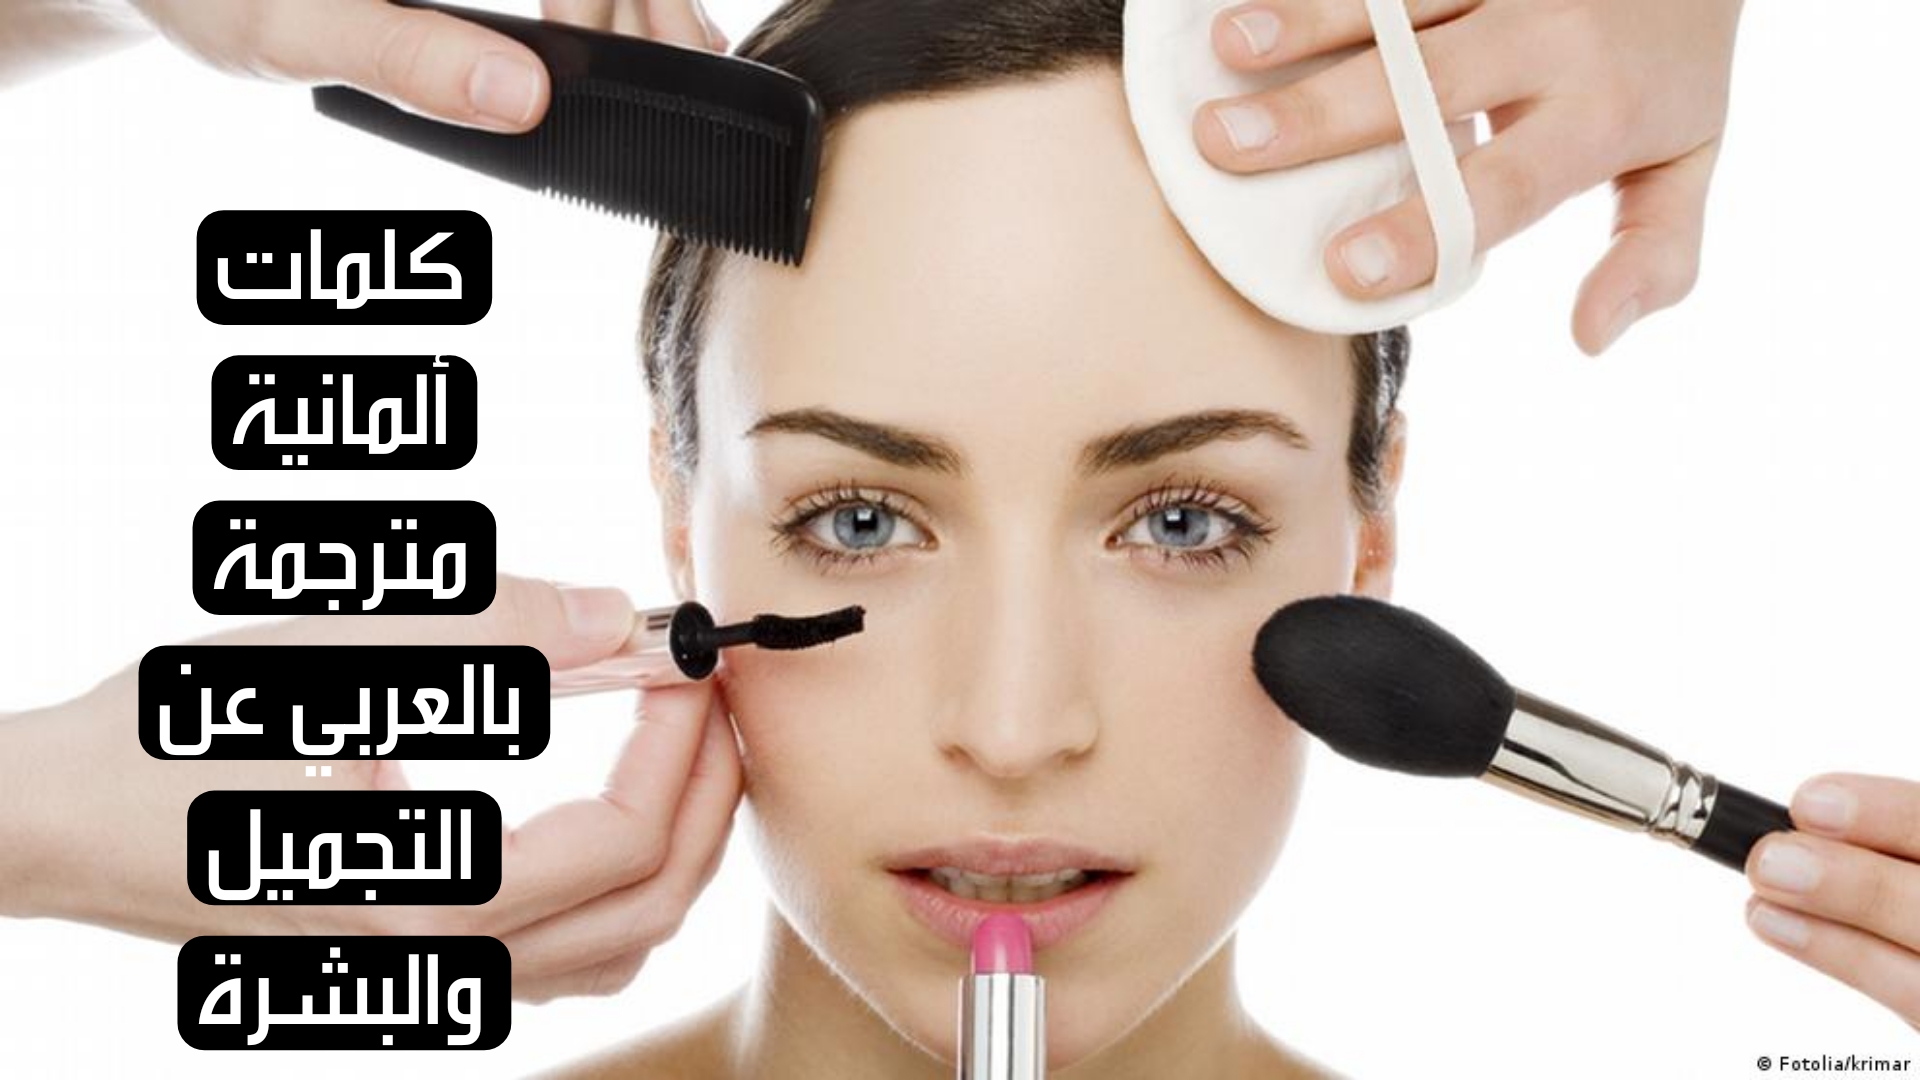 كلمات ألمانية مترجمة بالعربي عن التجميل والبشرة